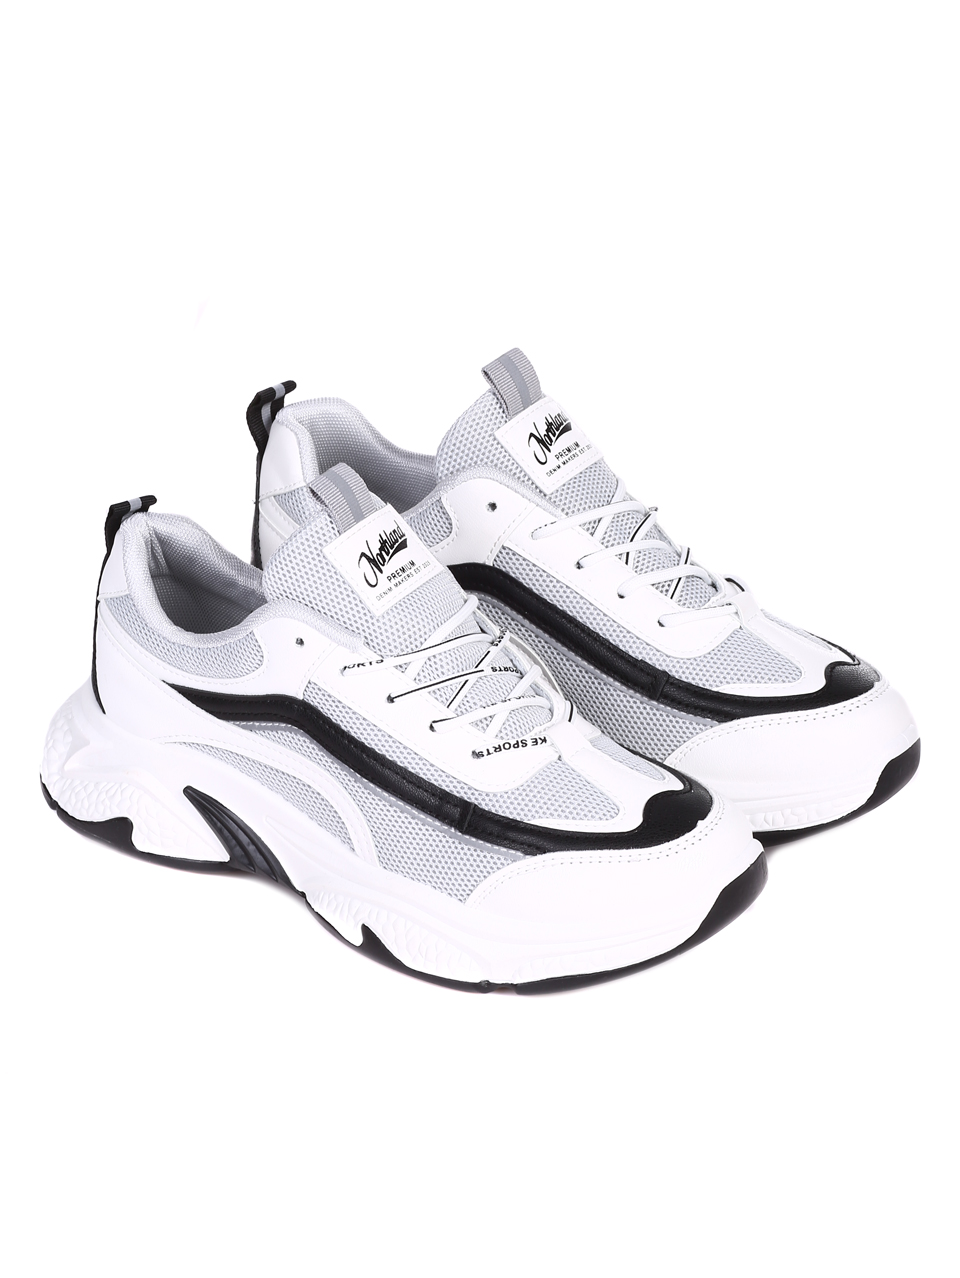 Ежедневни мъжки обувки в бяло 7U-22011 white